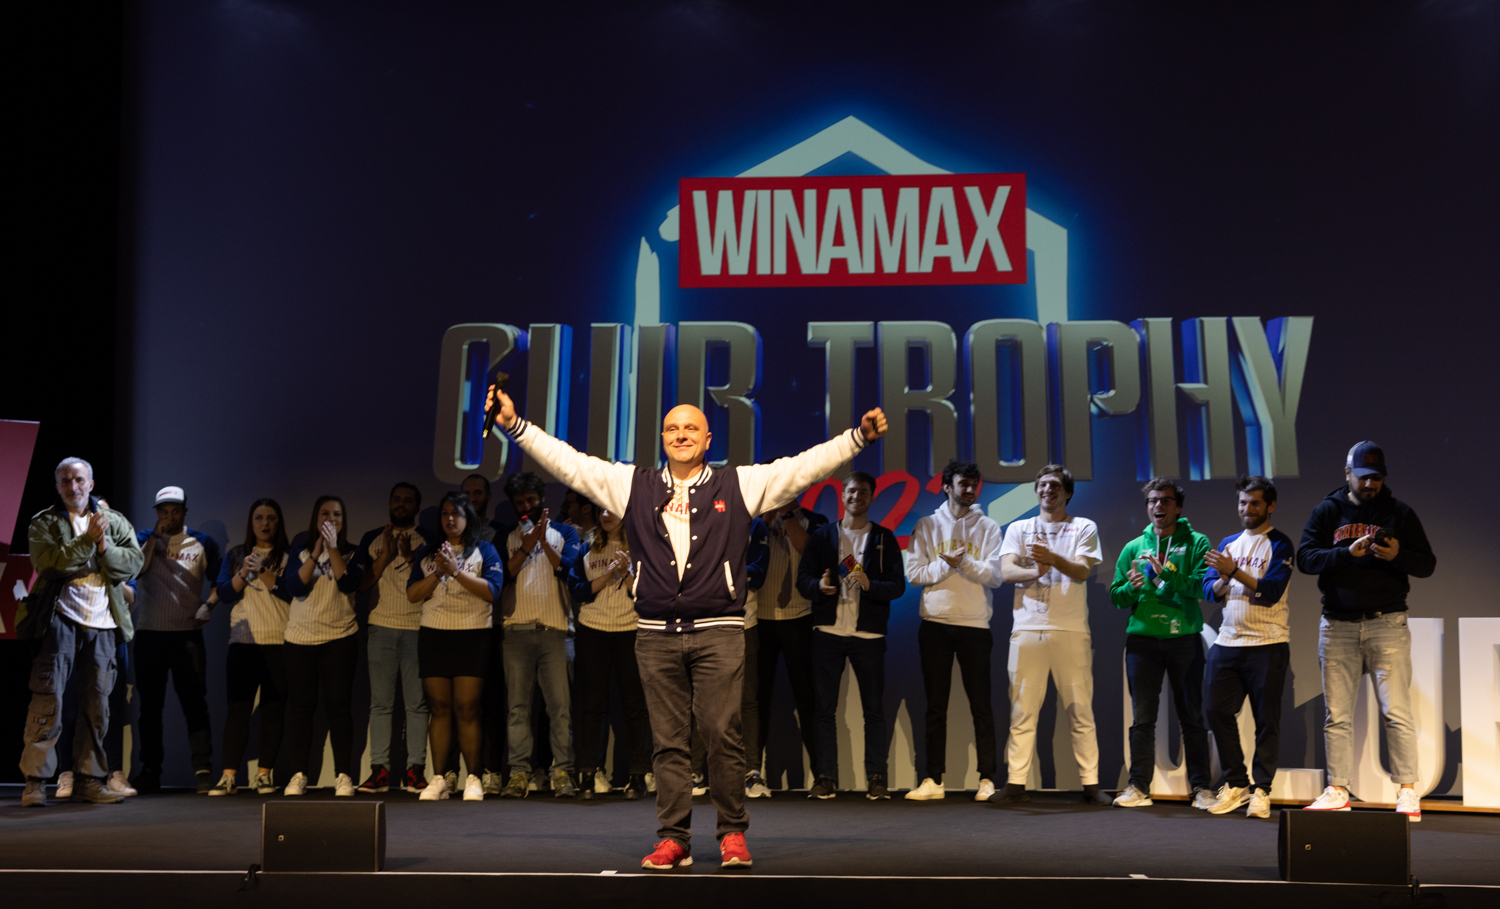 Winamax Club Trophy